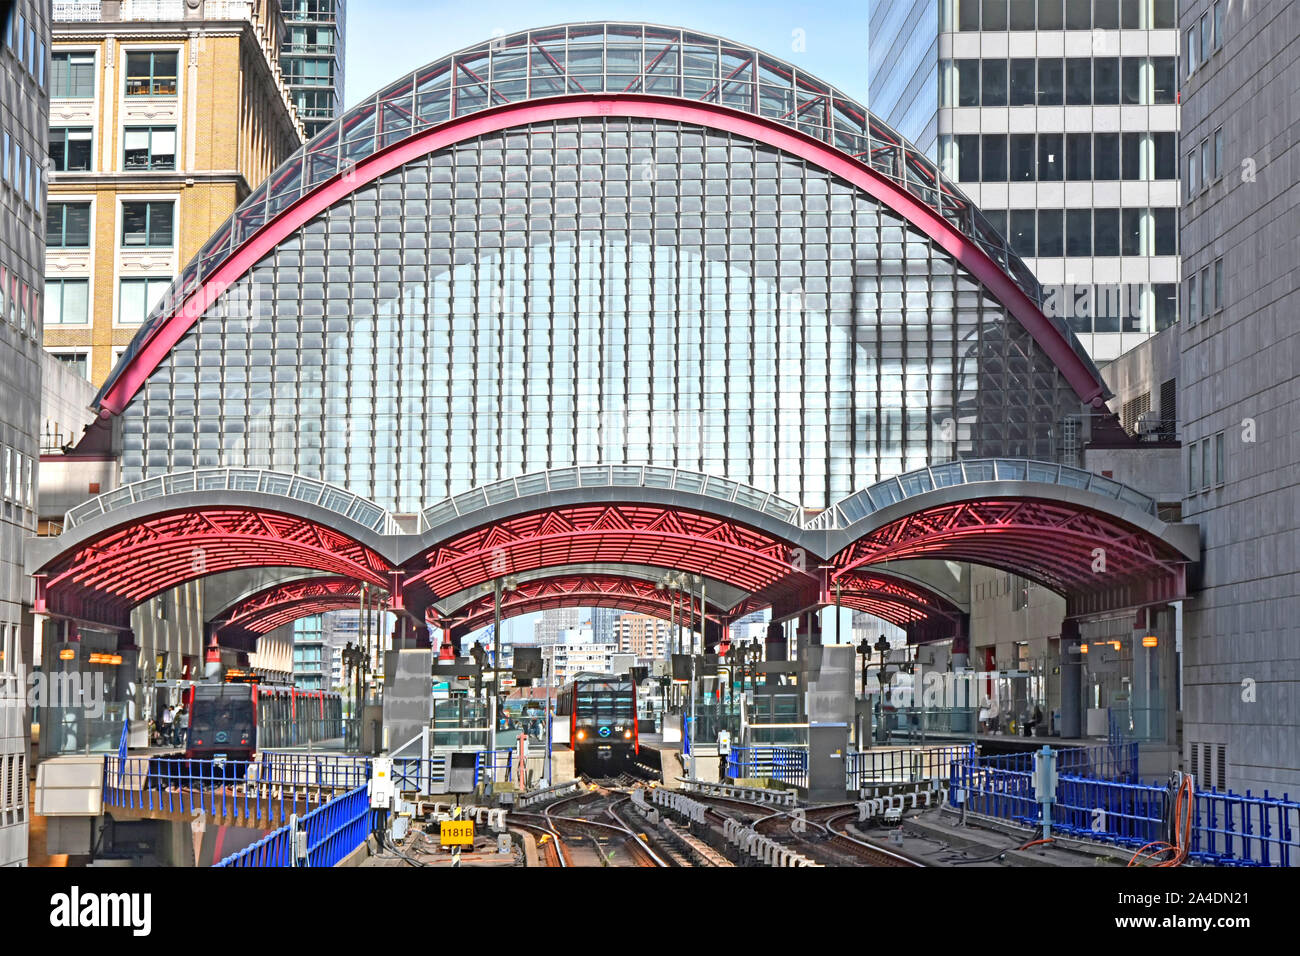 Hohe gewölbte Glasdach über Docklands Light Railway DLR Canary Wharf Bahnsteig Züge bei umsteigeplattformen East London England Großbritannien Stockfoto